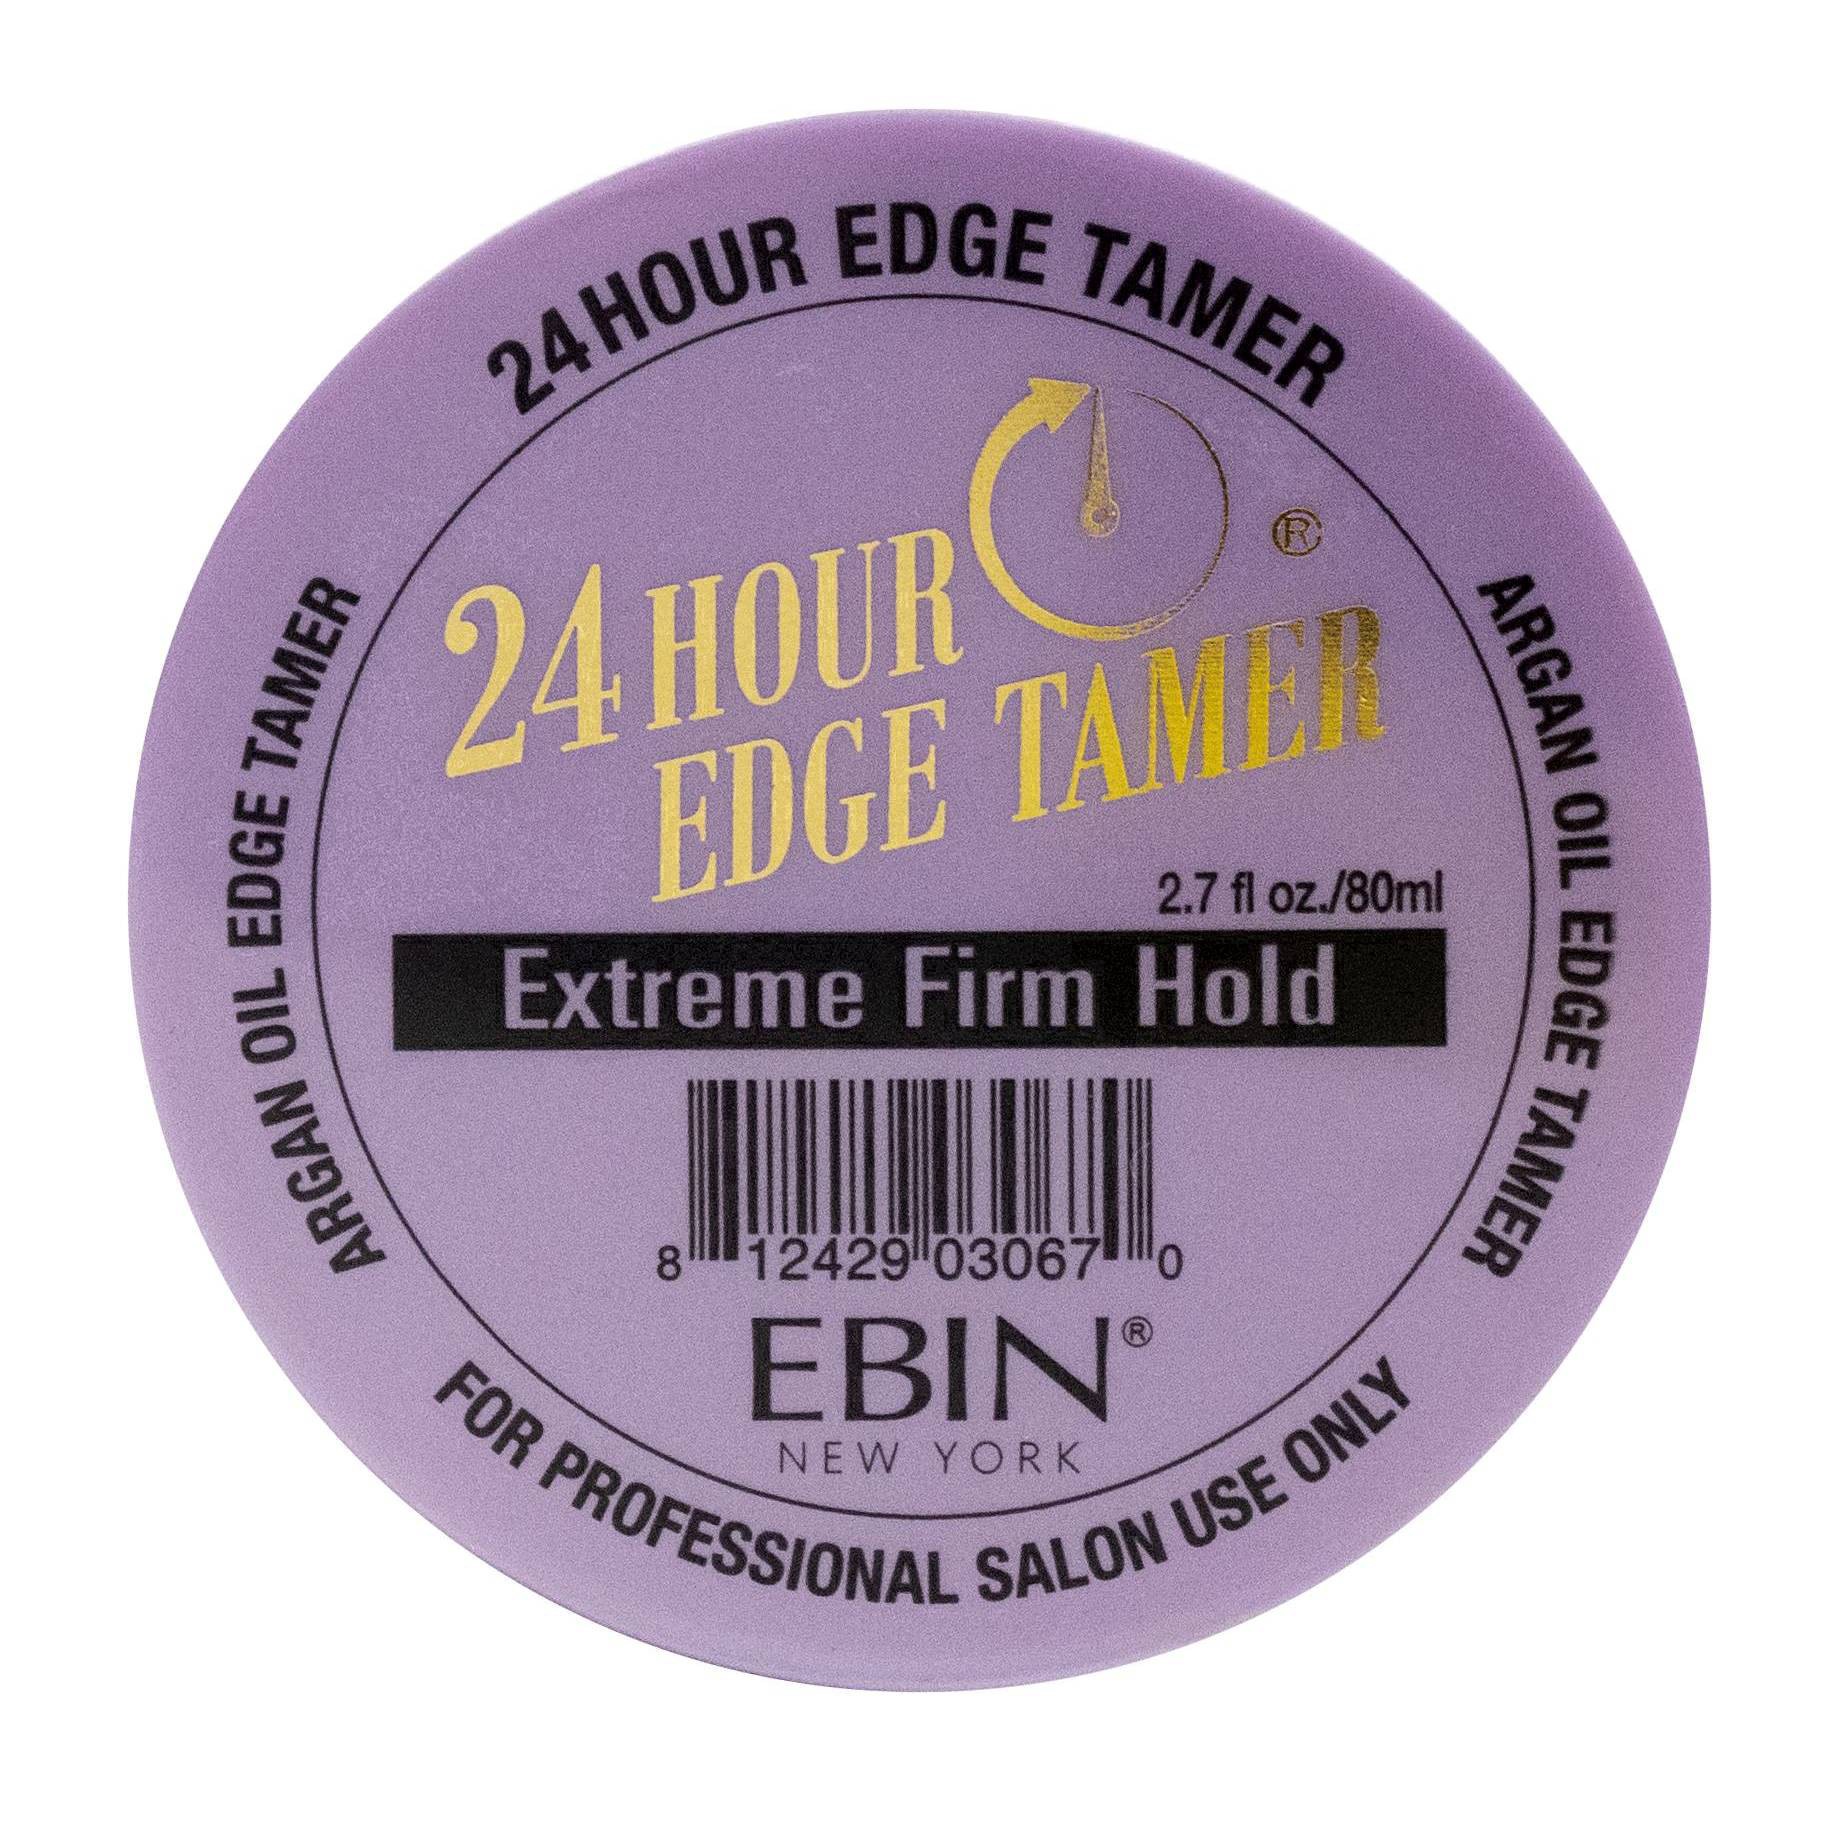 slide 19 of 53, EBIN Edge Tamer Extreme Firm Hold, 2.7 oz